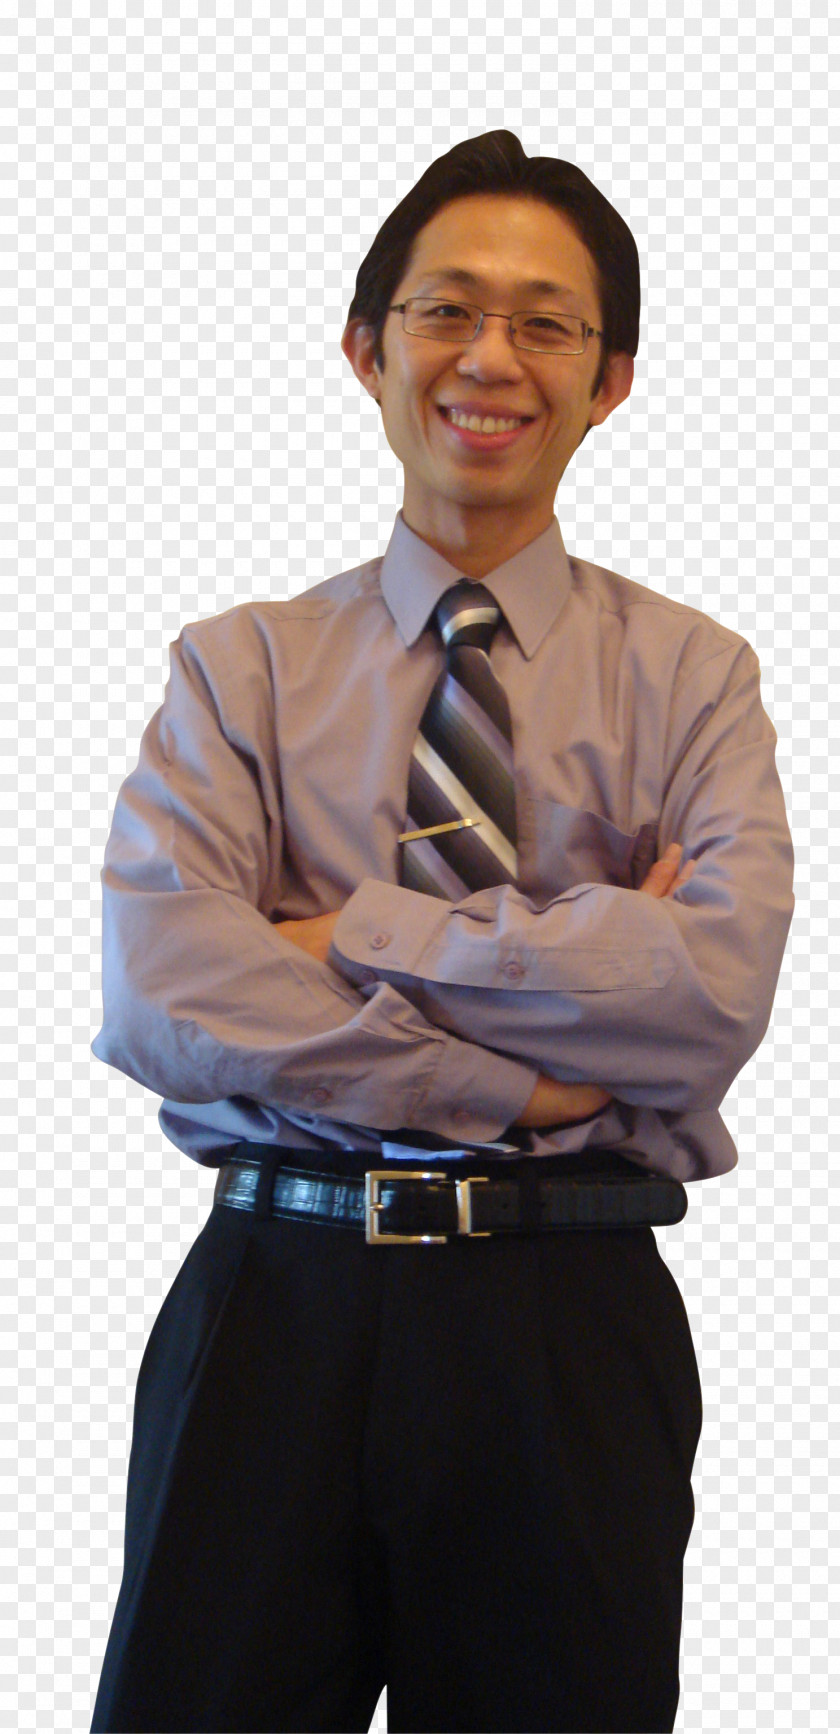 Wong Businessperson Tuxedo Dress Shirt White-collar Worker PNG